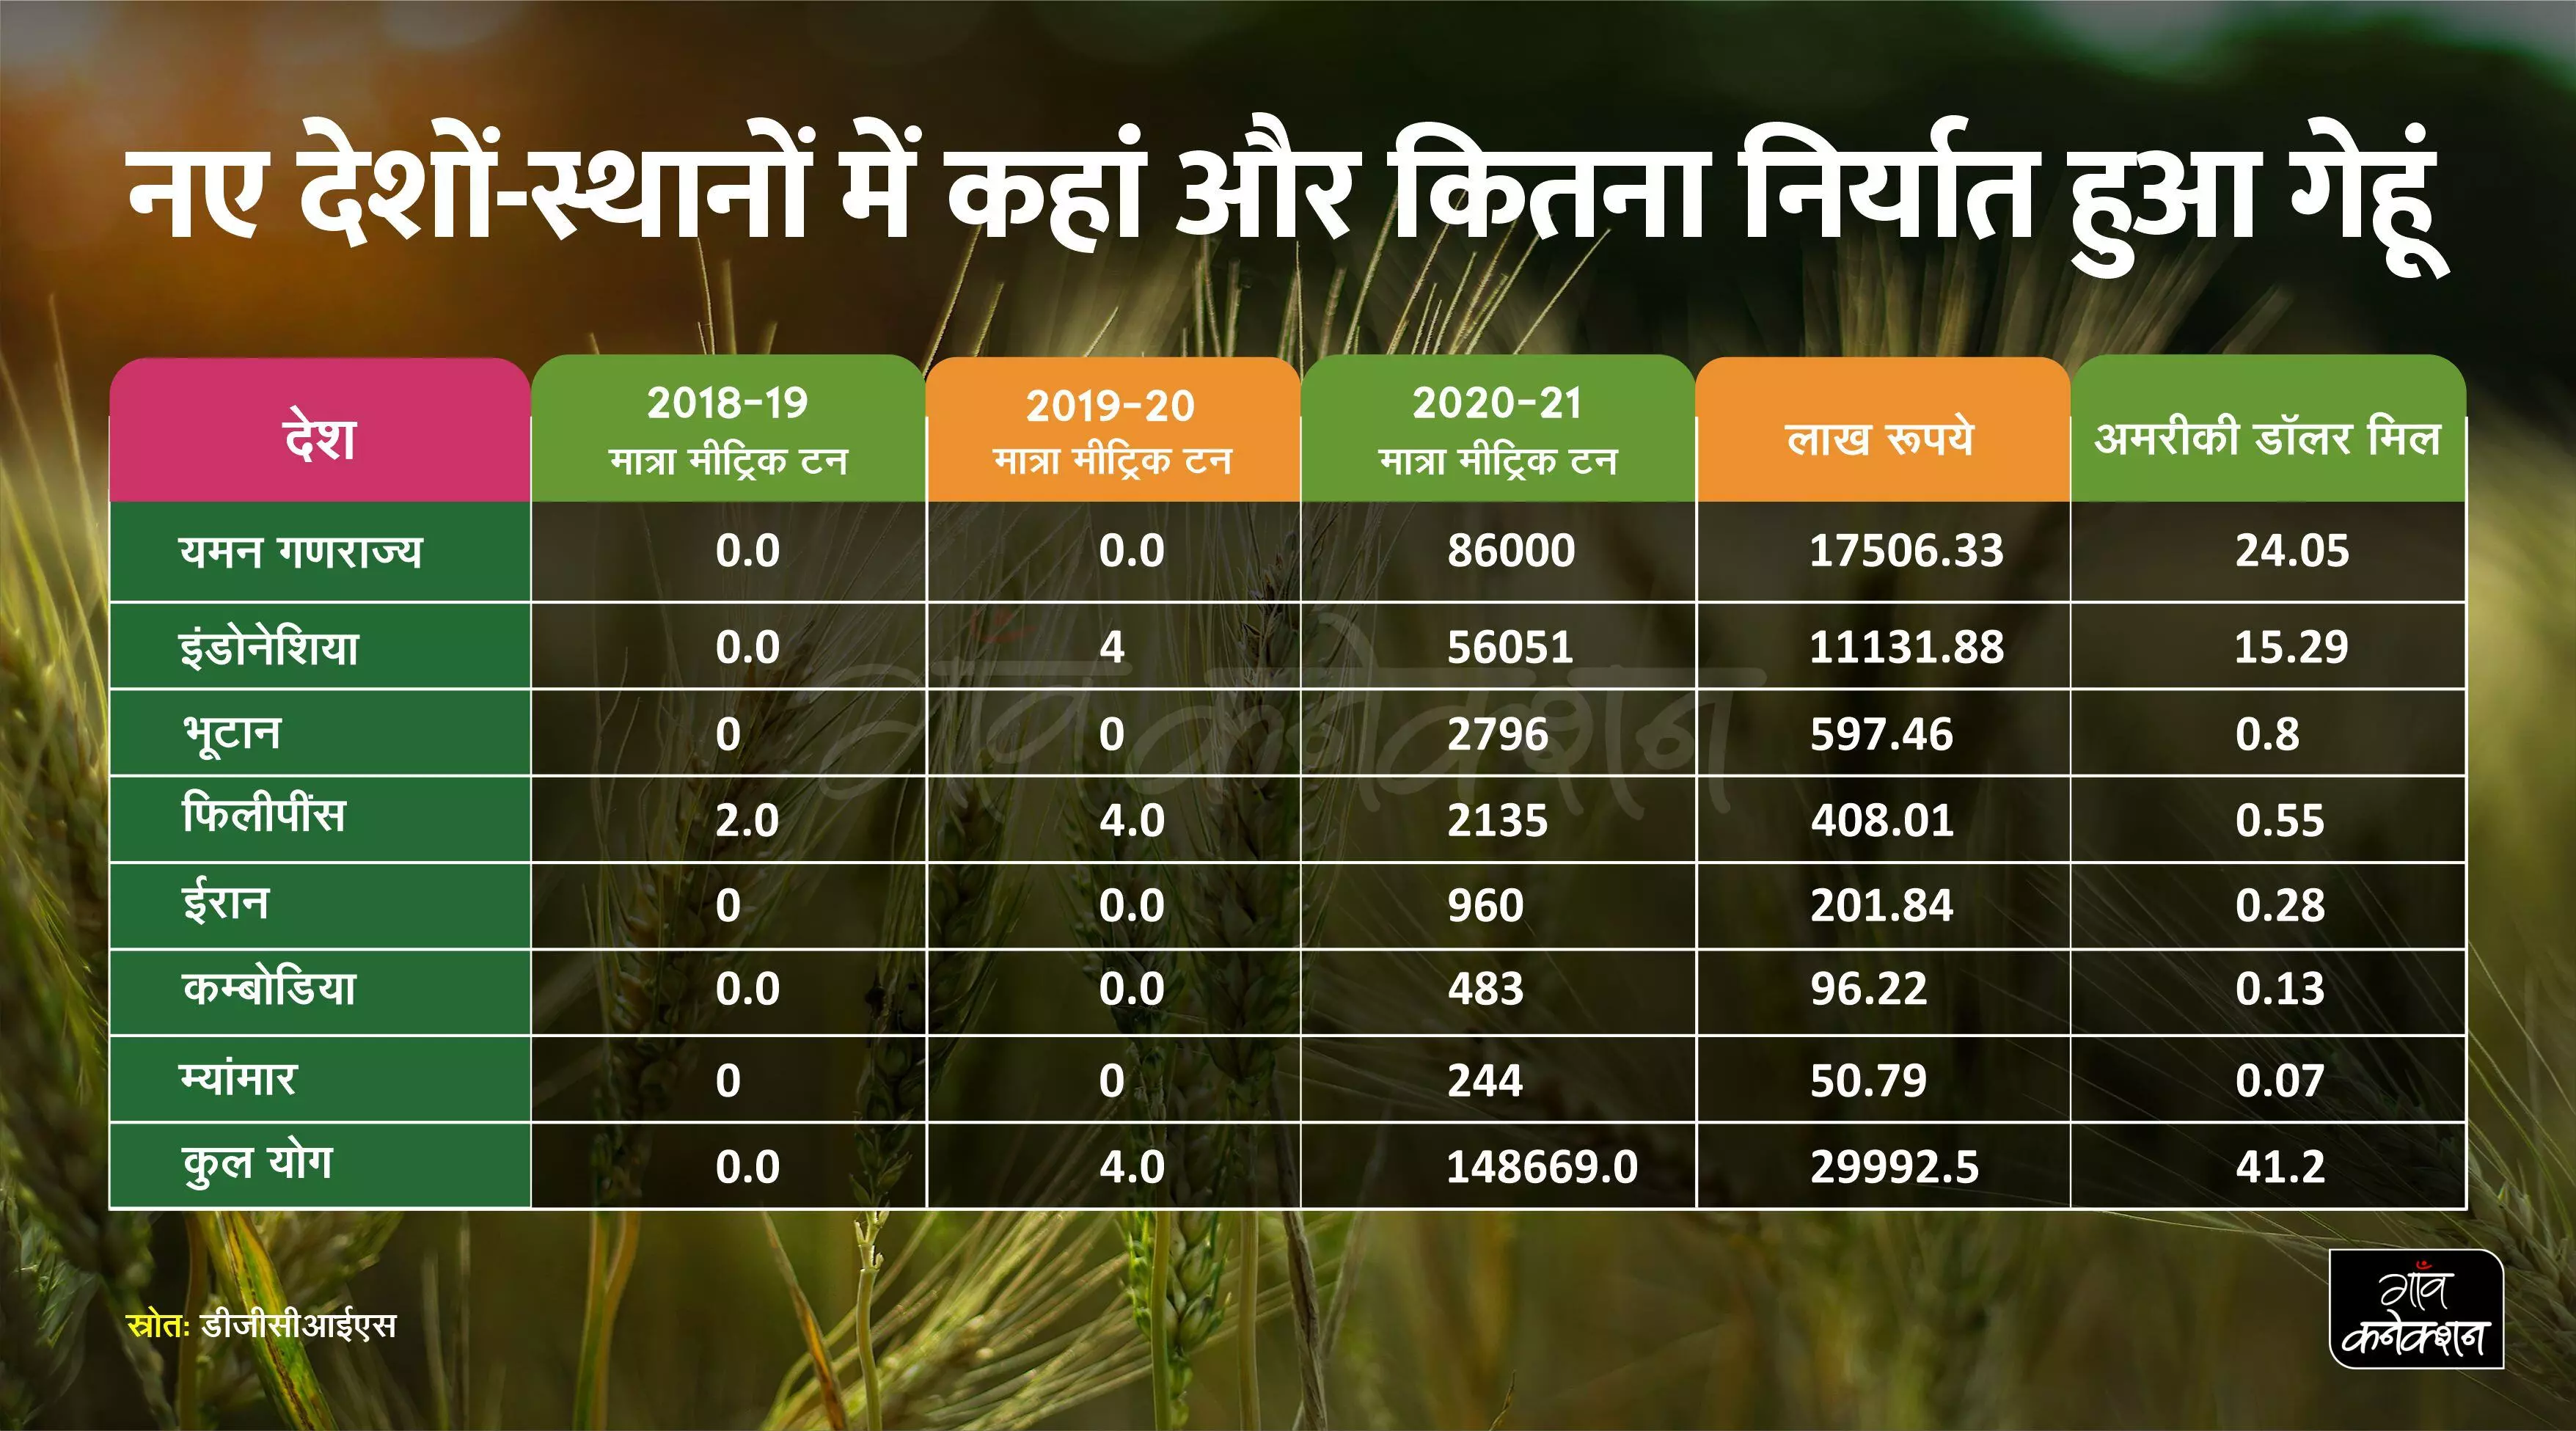 भारत के कृषि उत्पादों का विदेश में बढ़ रहा बाजार, गैर बासमती चावल औऱ गेहूं निर्यात में भारी बढ़ोतरी